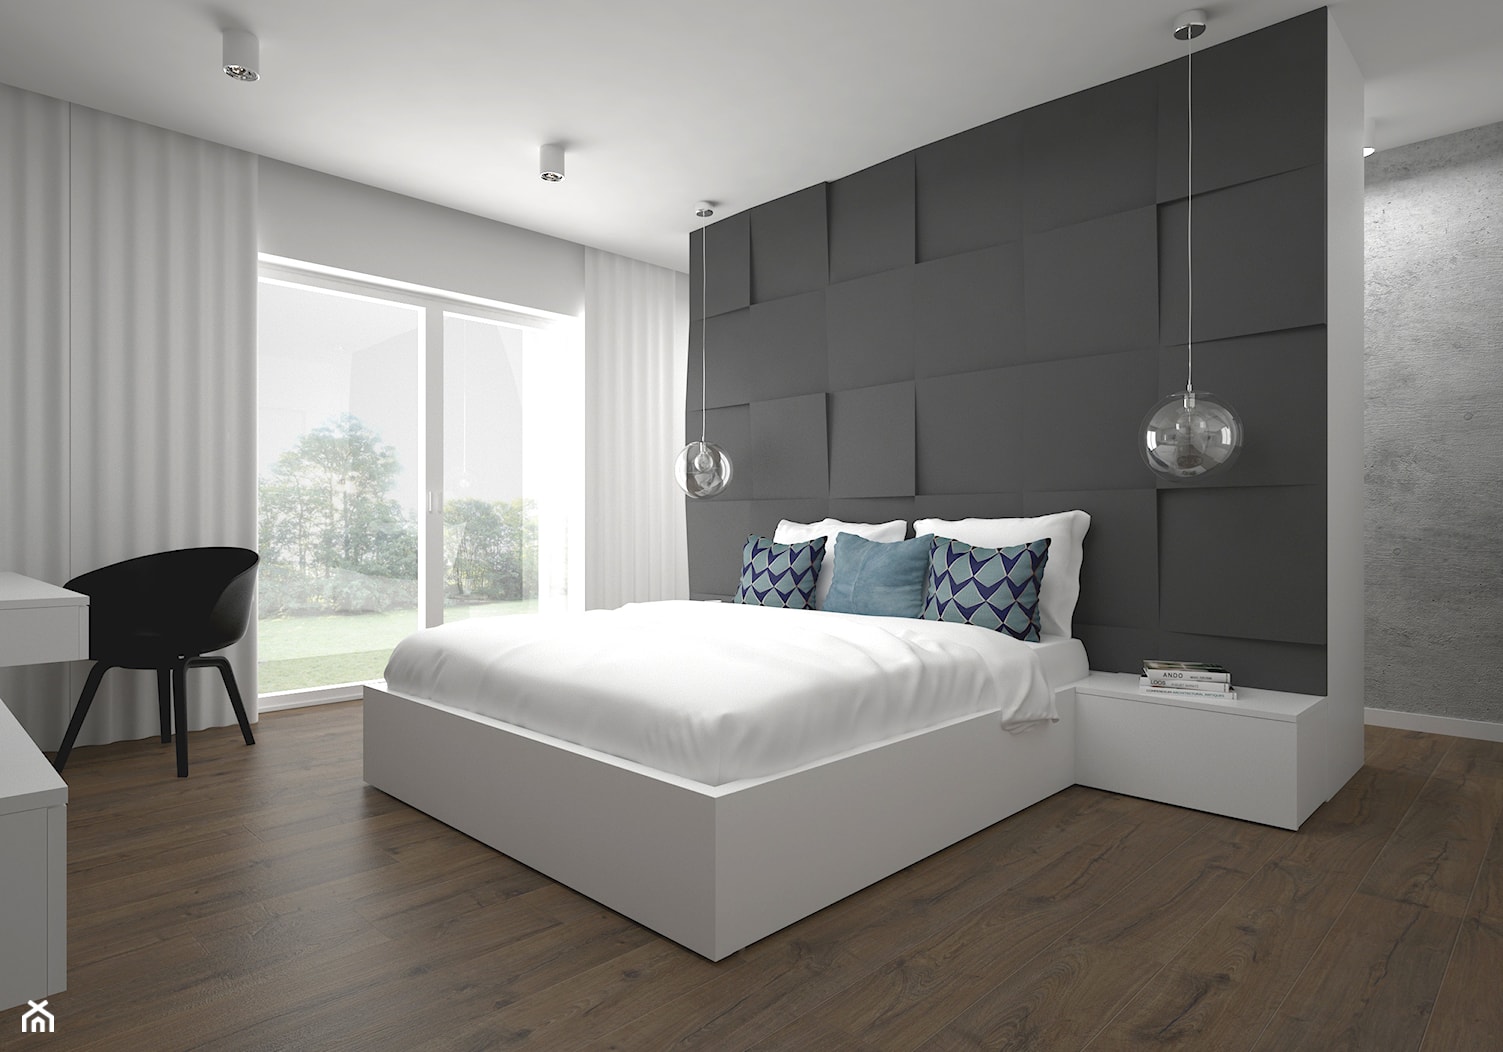 Projekt domu 120 m2 / Bochnia - Średnia biała czarna sypialnia, styl nowoczesny - zdjęcie od BIG IDEA studio projektowe - Homebook